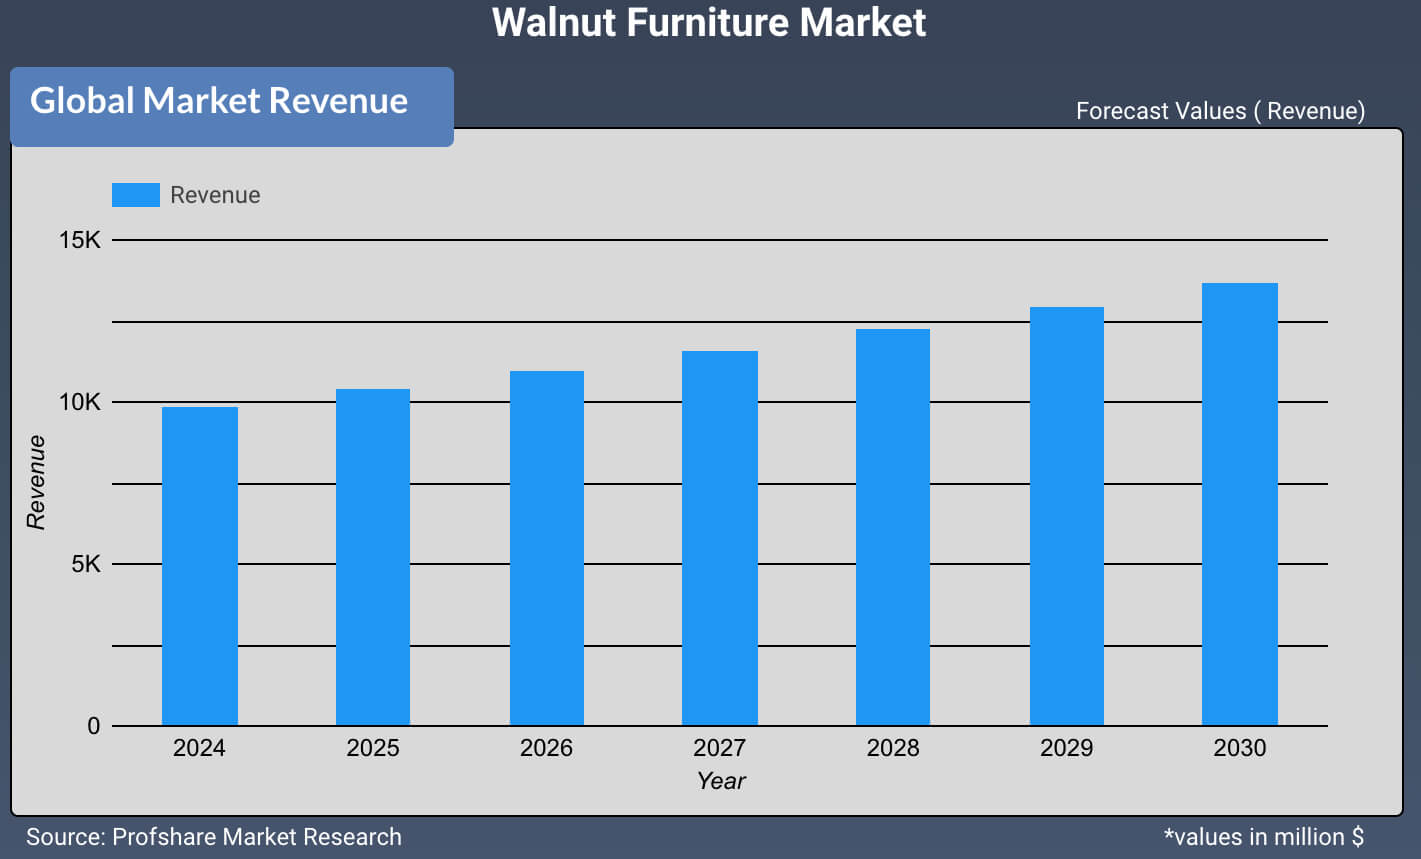 Walnut furniture market